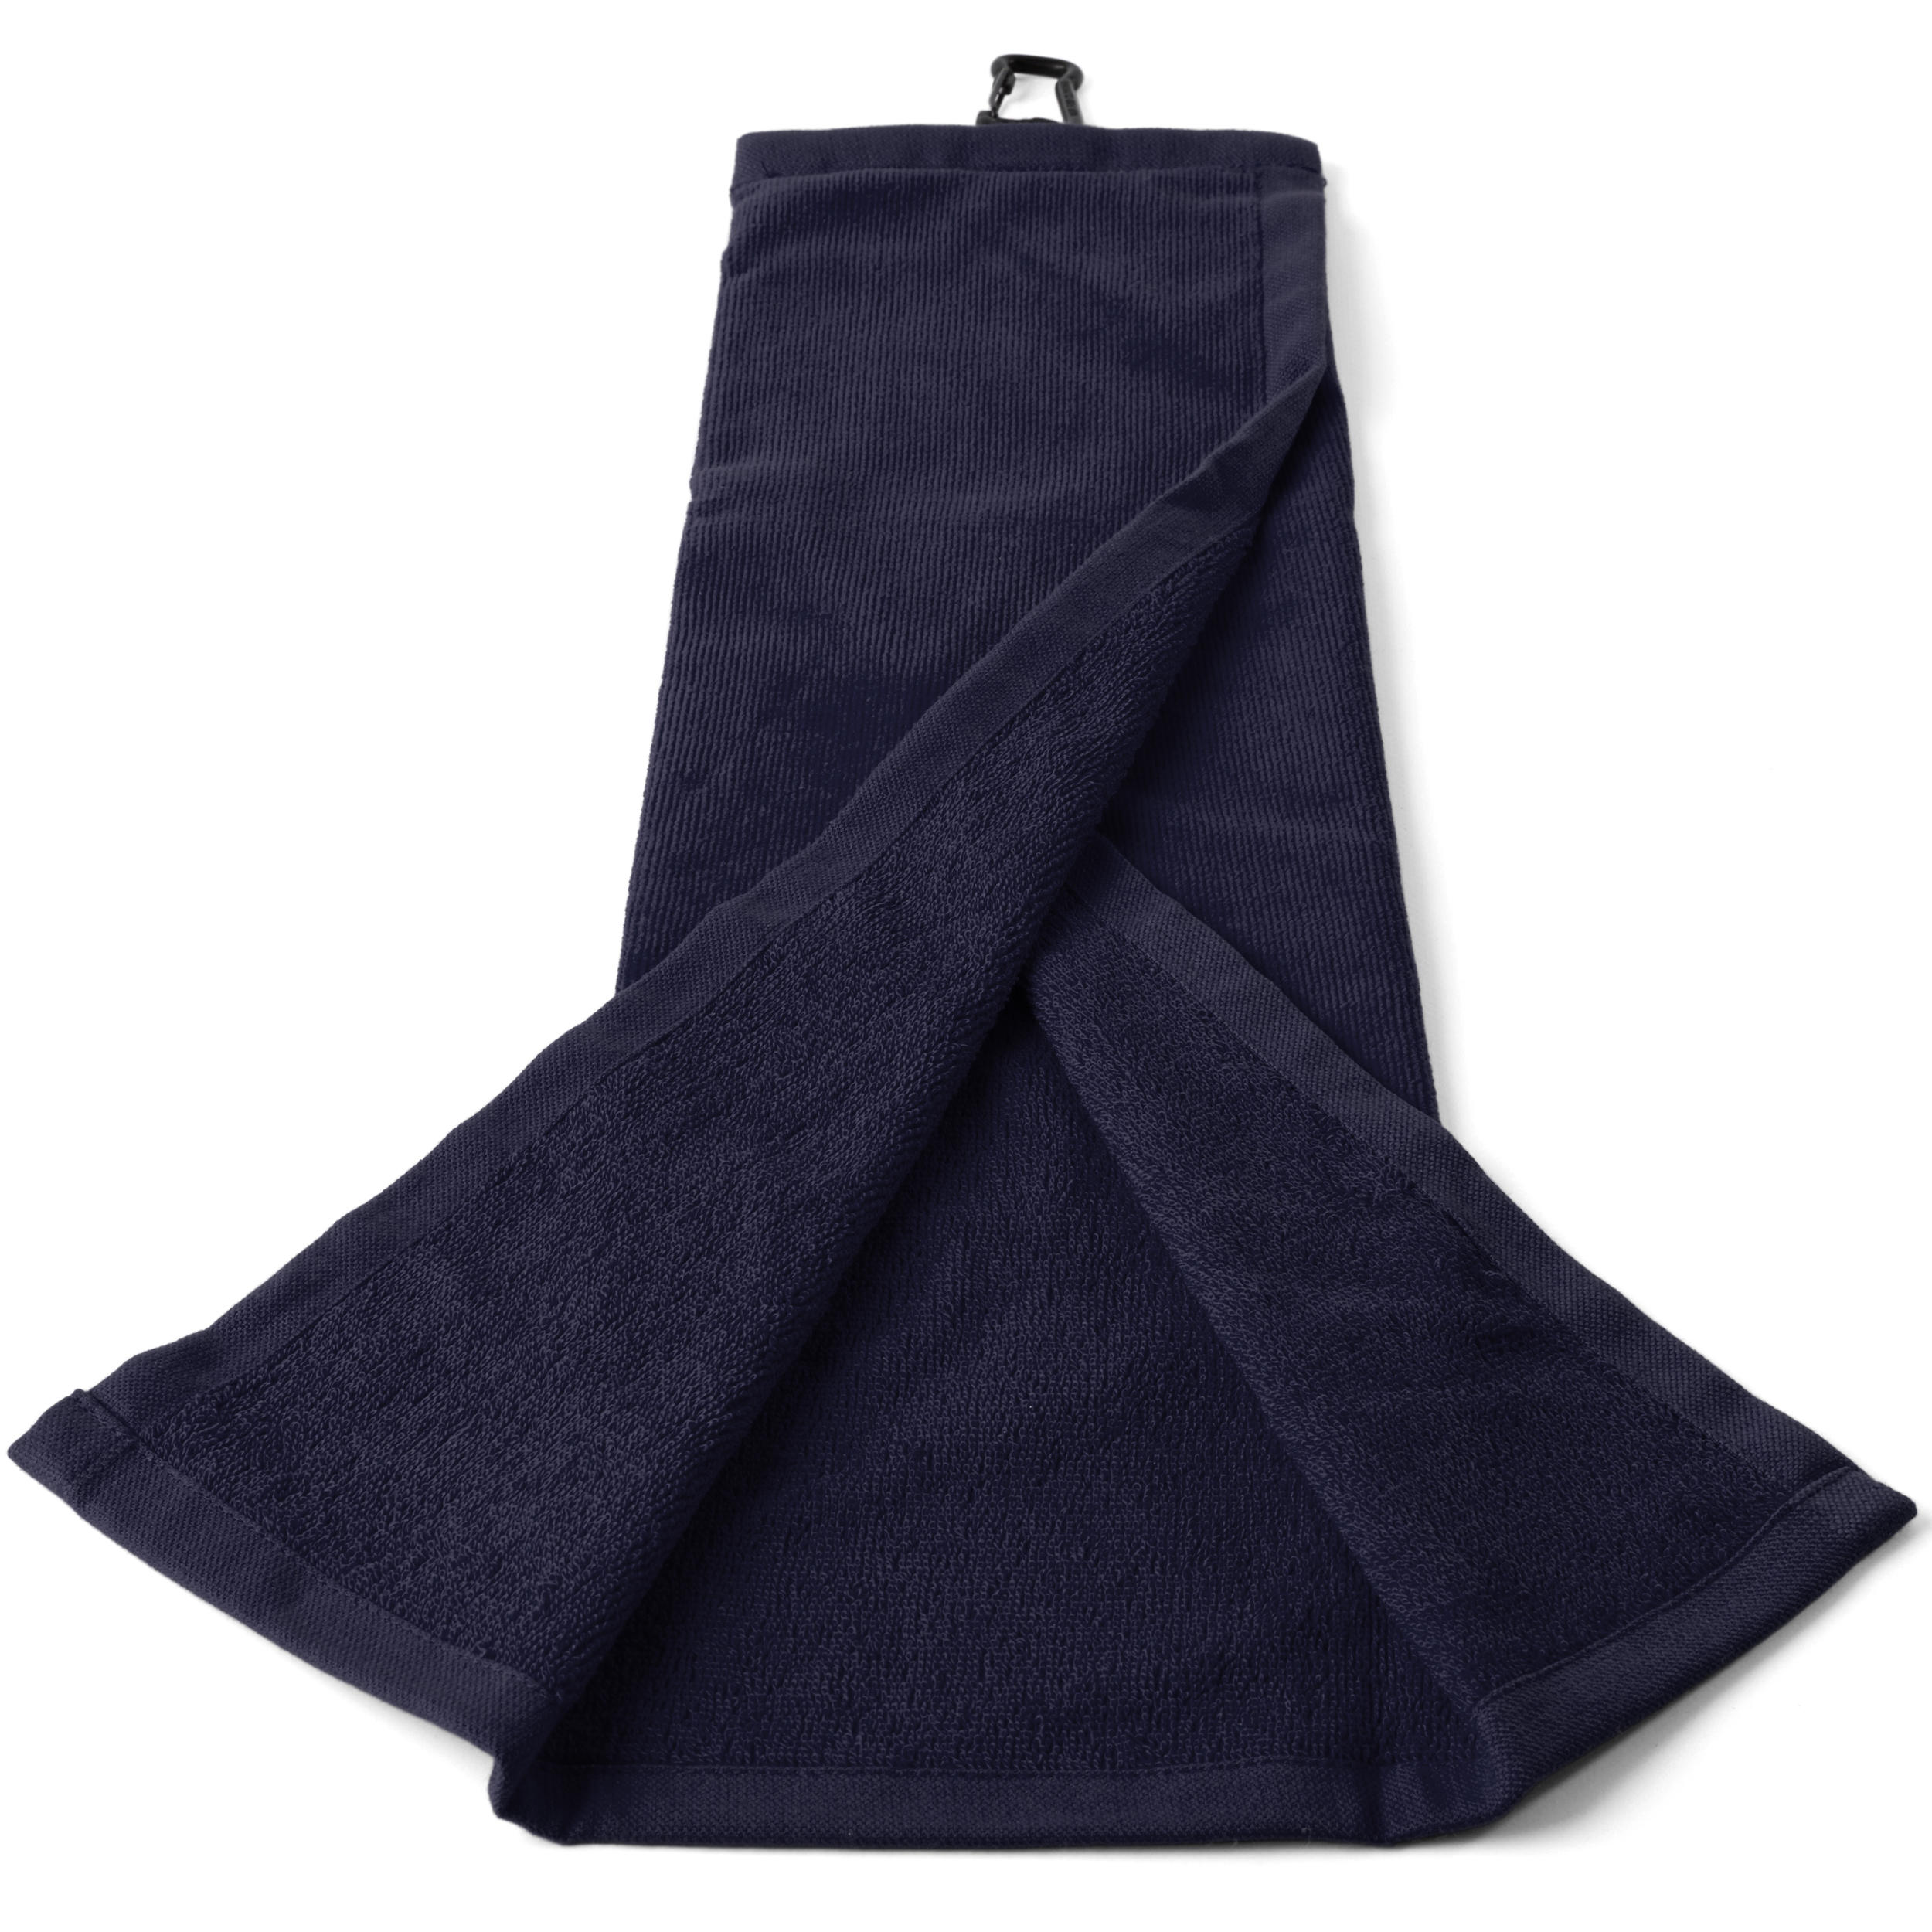 [ส่งฟรี ] ผ้าขนหนูเช็ดอุปกรณ์กอล์ฟรุ่น Tri-Fold (สีน้ำเงิน) Tri-Fold Golf Towel - Blue อุปกรณ์กอล์ฟ ของแท้ รับประกัน